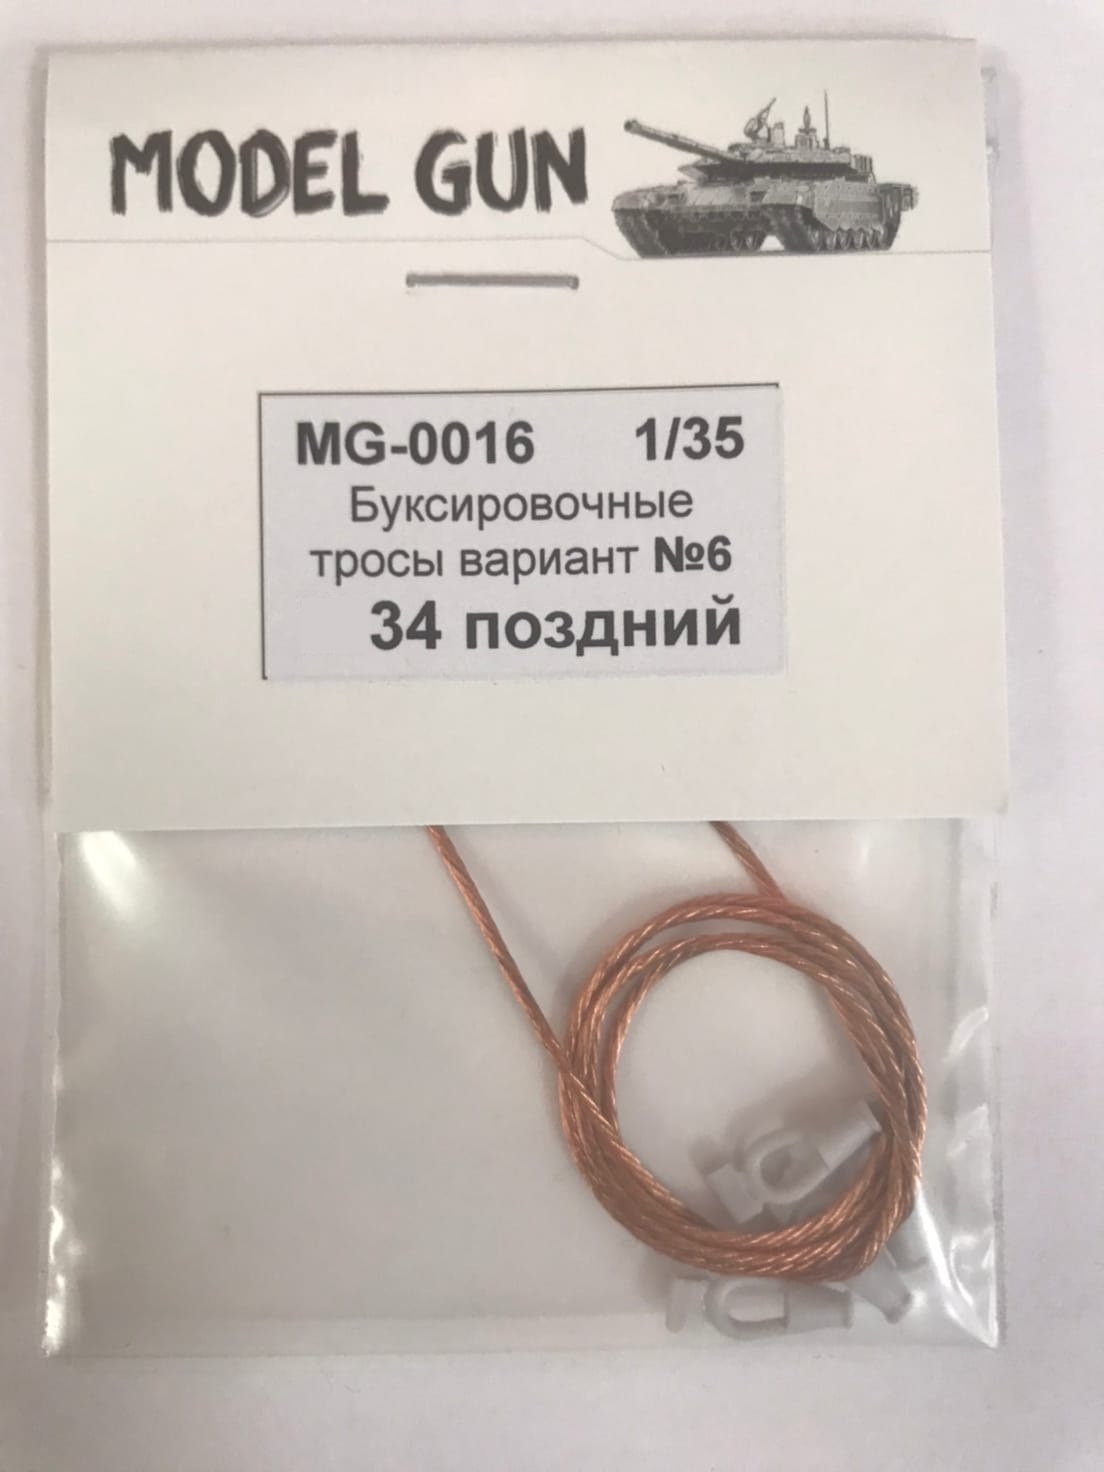 MG-0016  дополнения из металла  Буксировочные тросы вариант №6 Танк-34 поздний  (1:35)